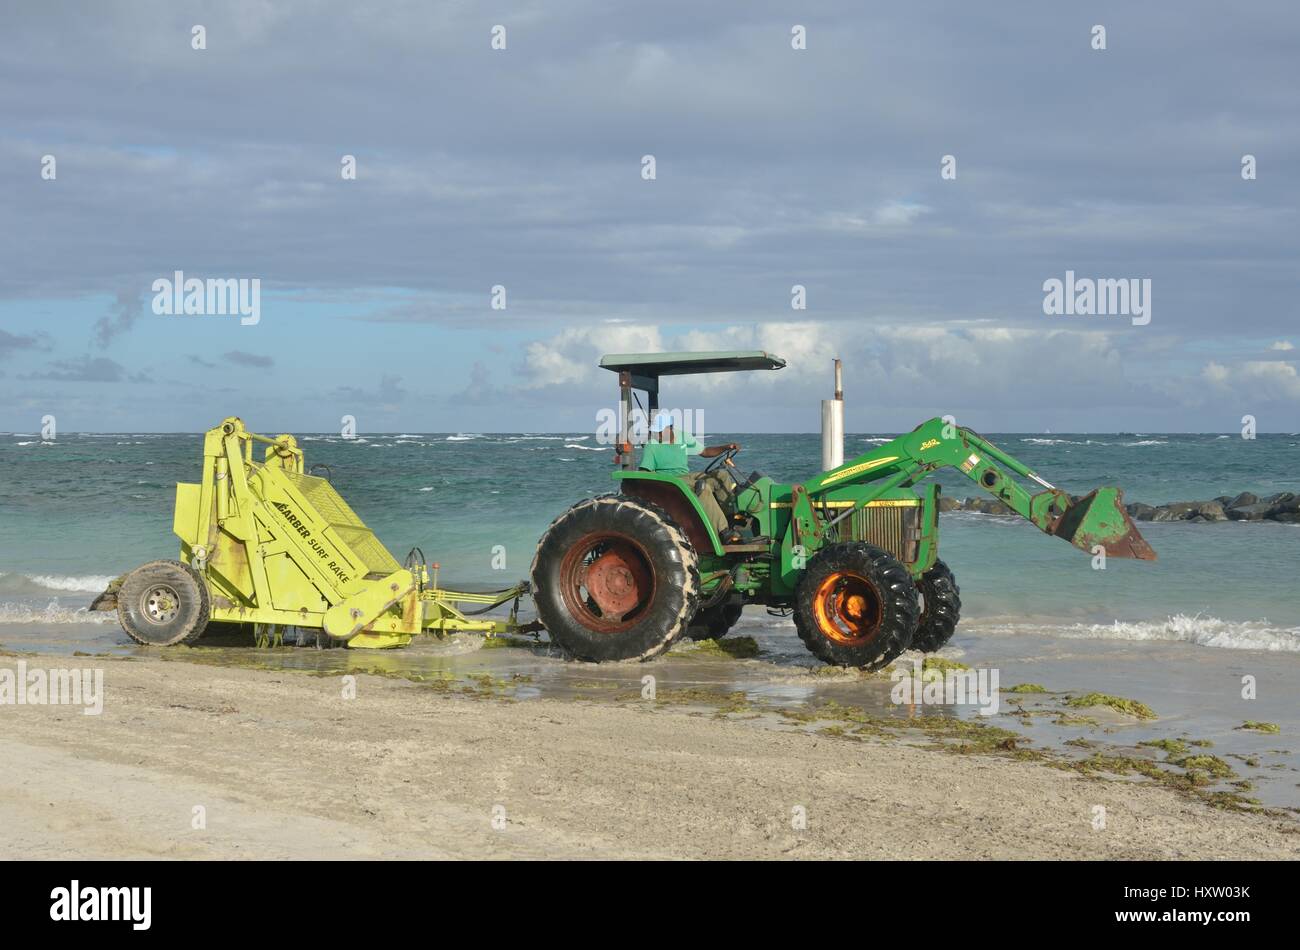 ST LUCIA CARAIBI 17 Gennaio 2015: Surf rastrello sul trattore dal mare Foto Stock